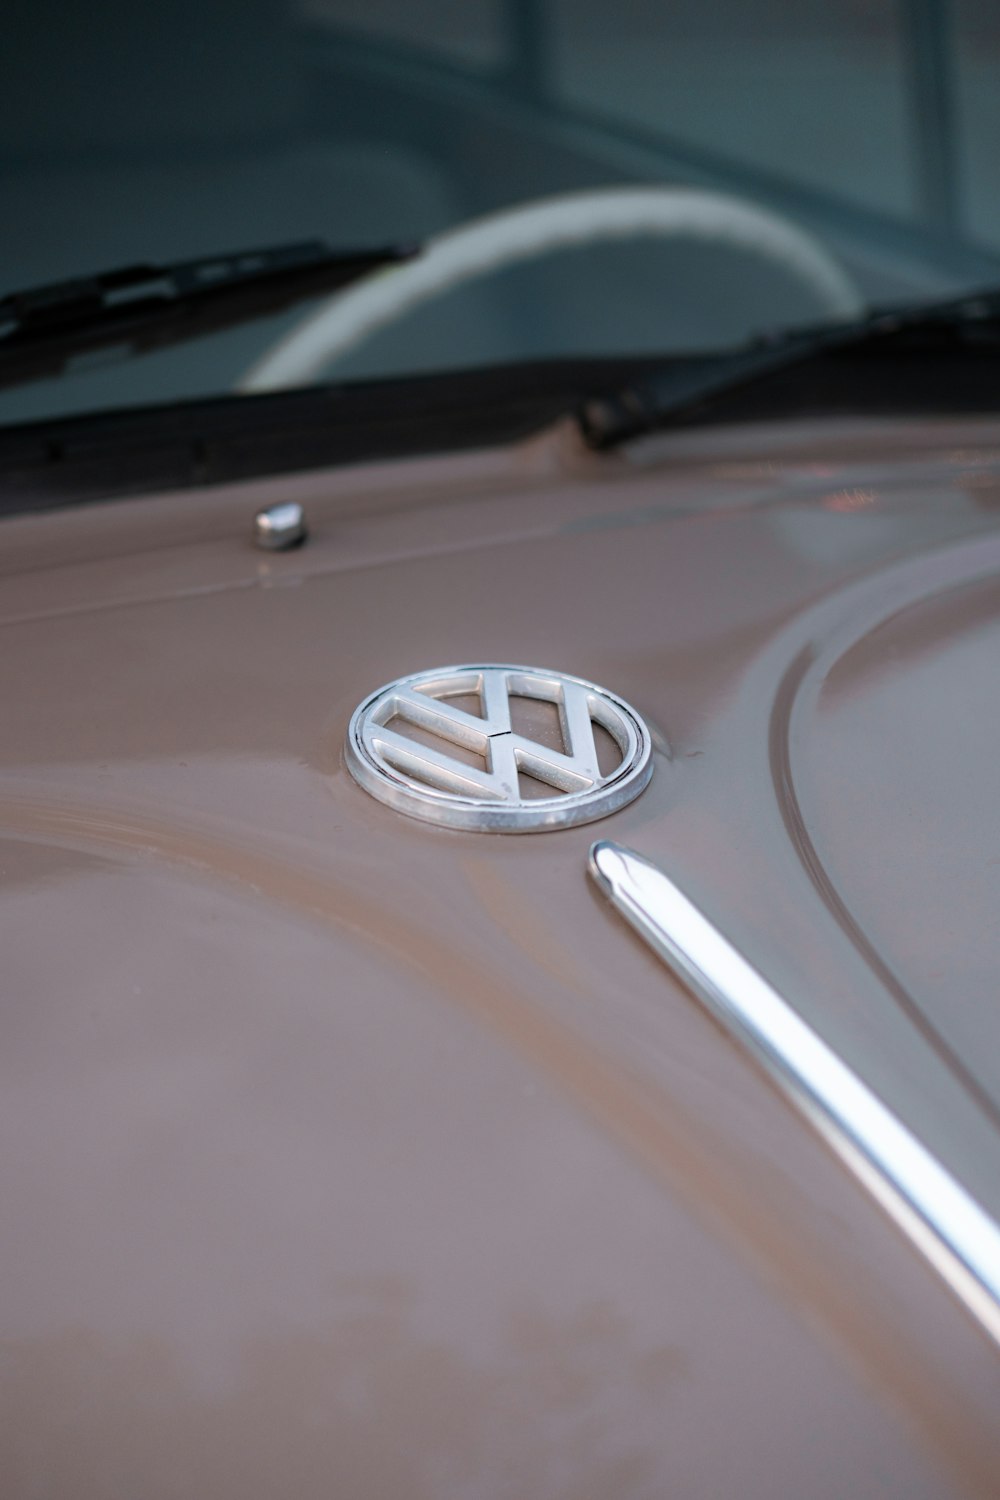 Um close up de um emblema Volkswagen no capô de um carro